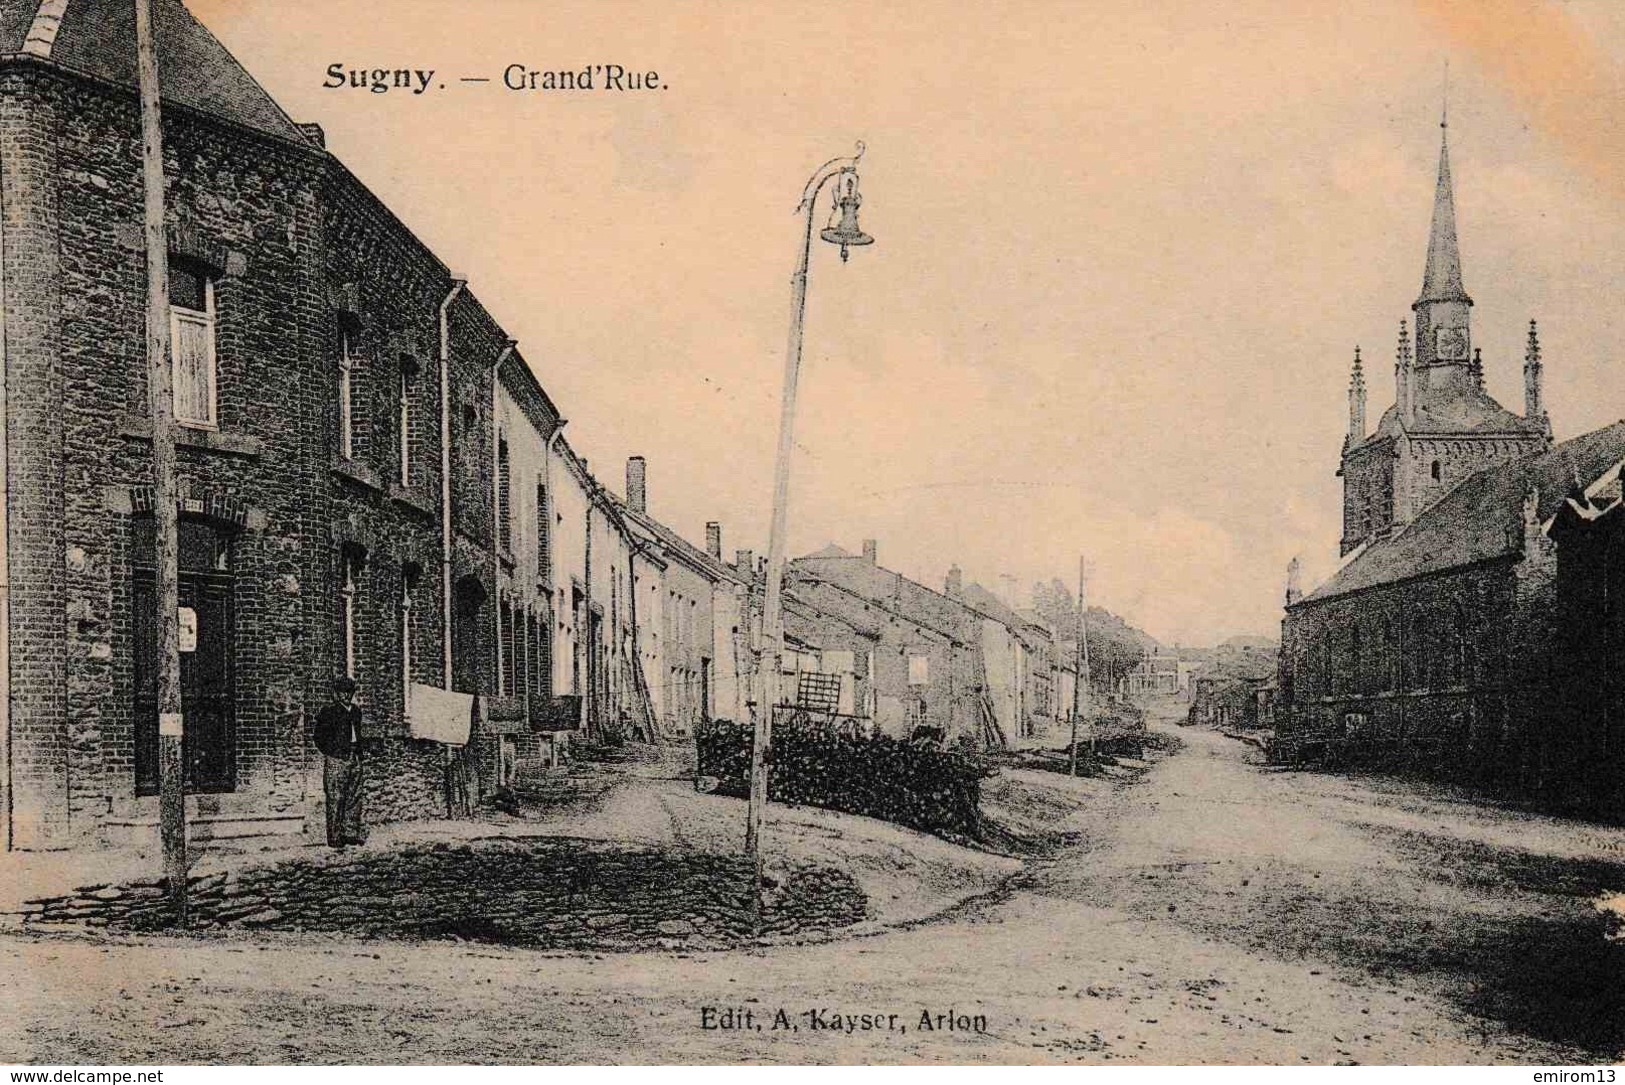 Vresse-sur-Semois Sugny Grand’rue église édit A. Kayser Arlon - Vresse-sur-Semois